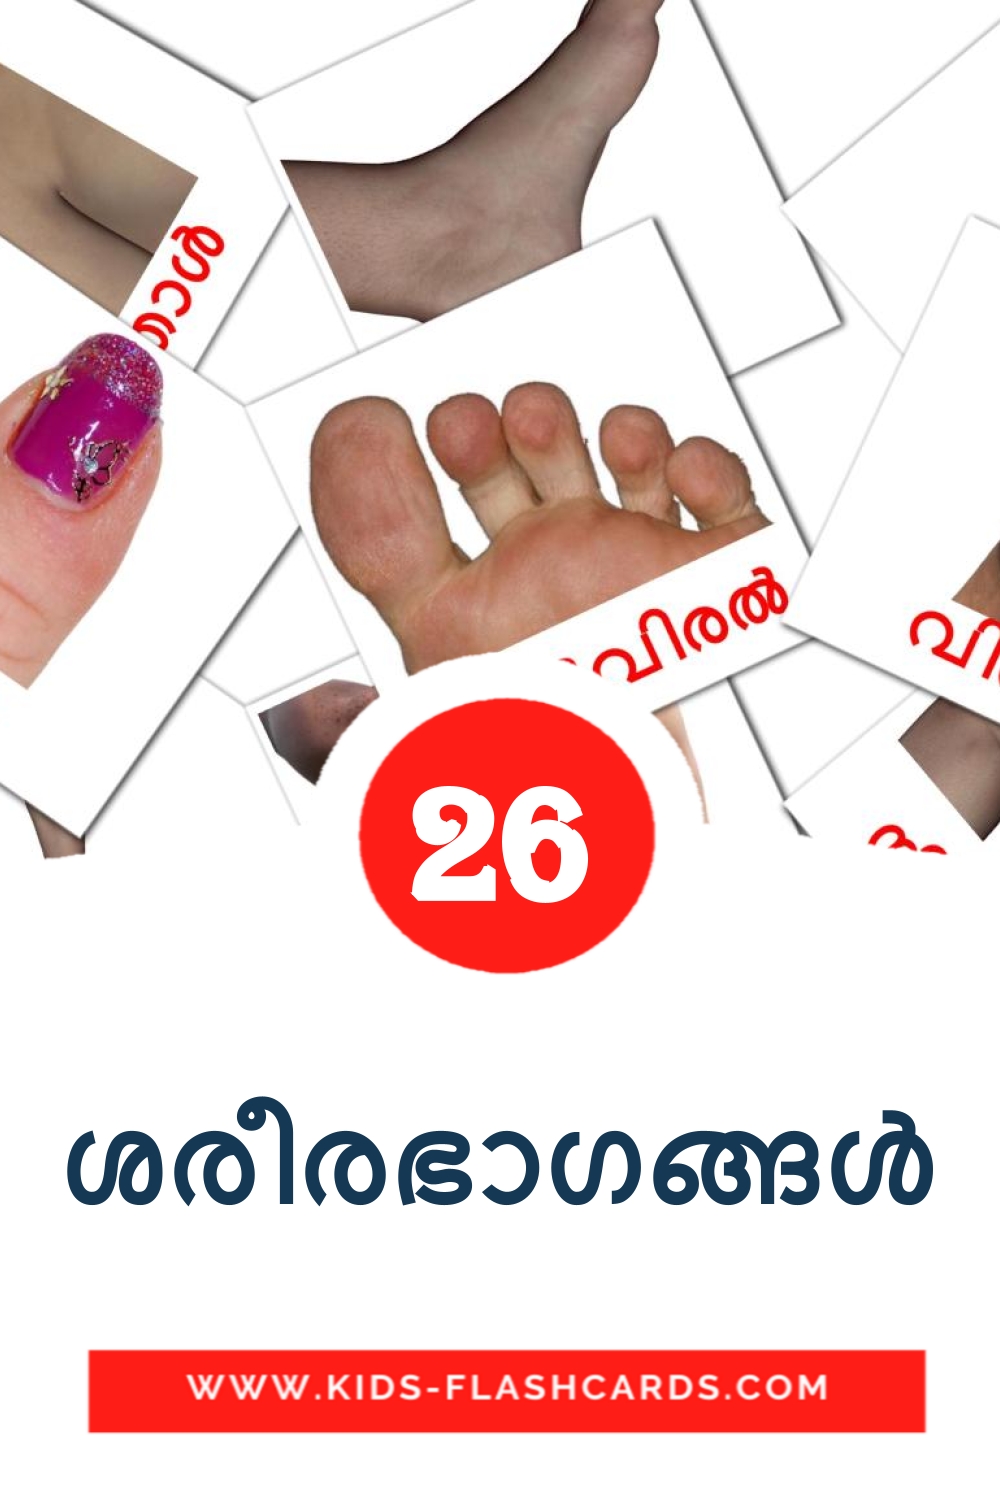 26 Cartões com Imagens de ശരീരഭാഗങ്ങൾ para Jardim de Infância em malayalam